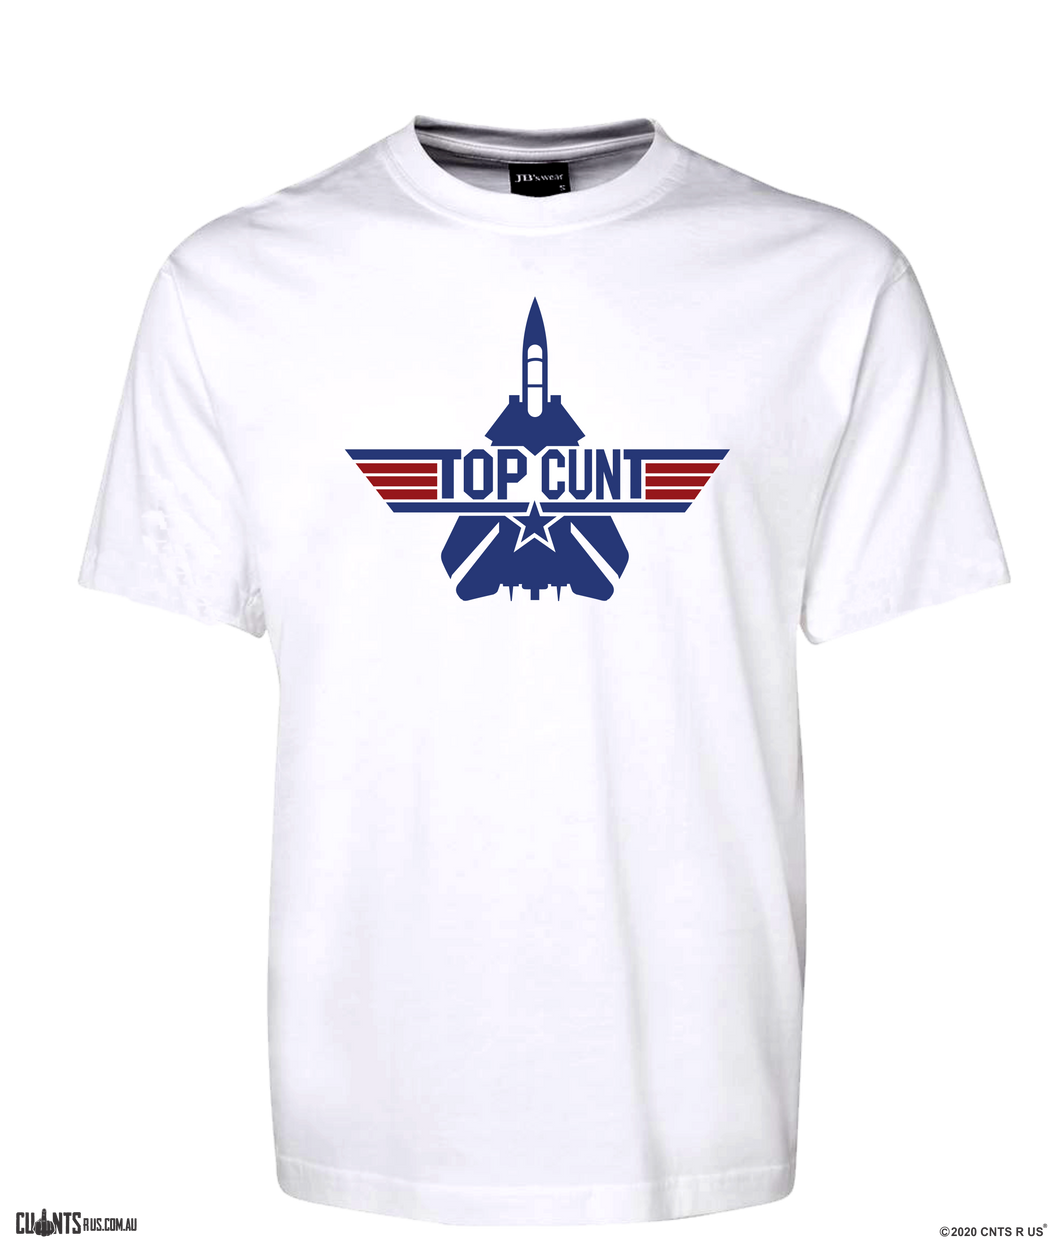 Top Cunt T-Shirt Or Hoodie Top Gun Style